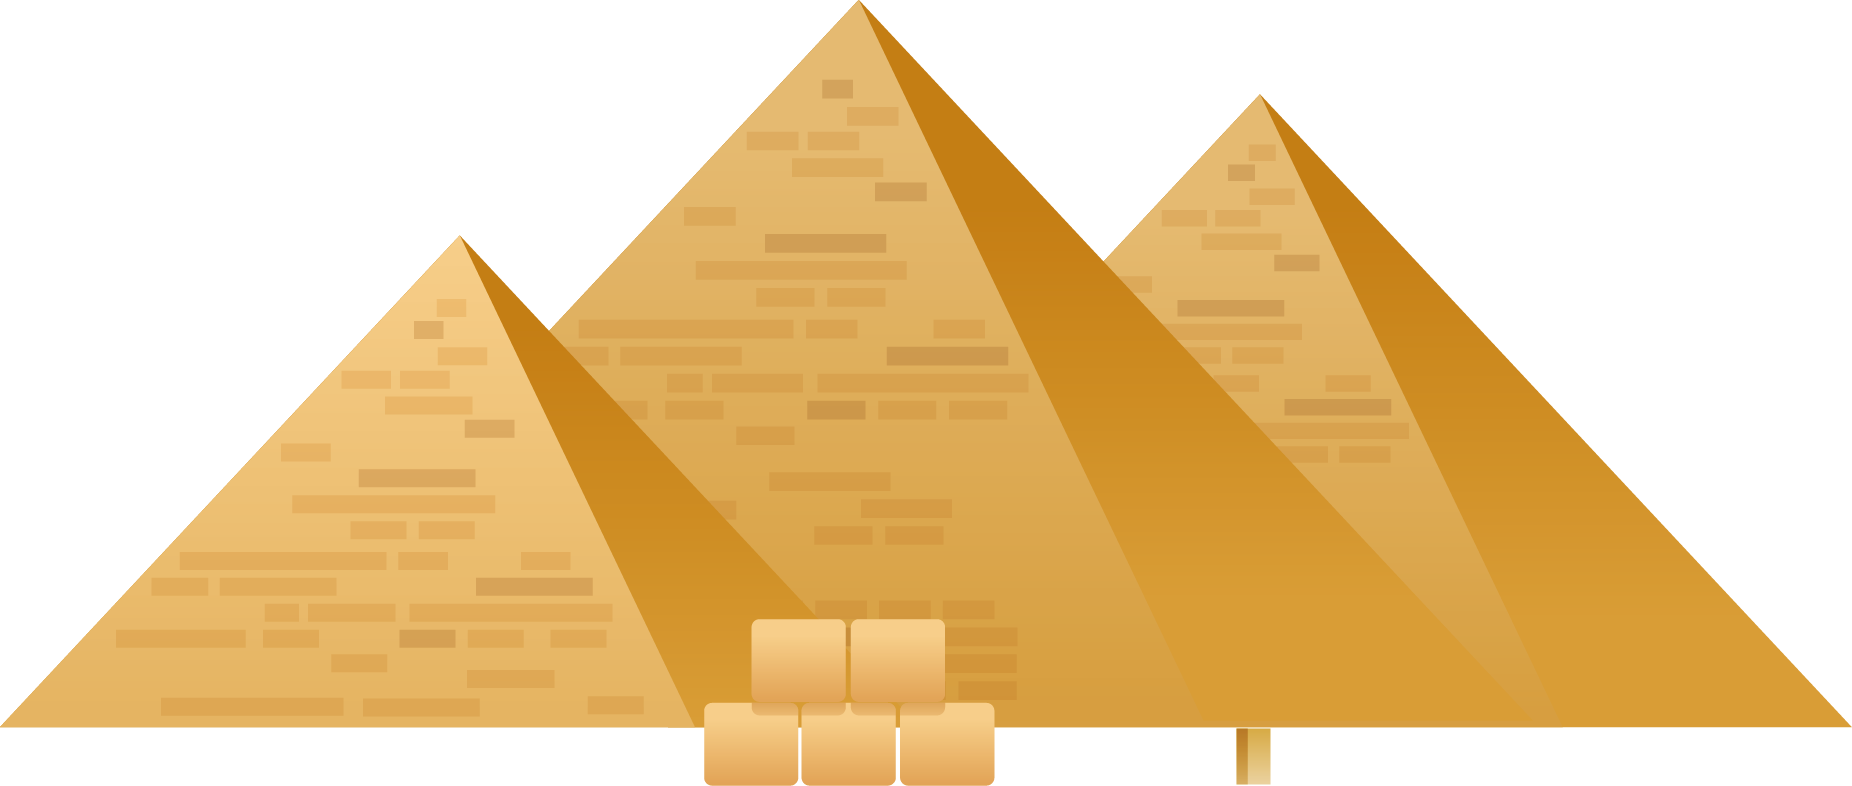 Immagini trasparenti della piramide